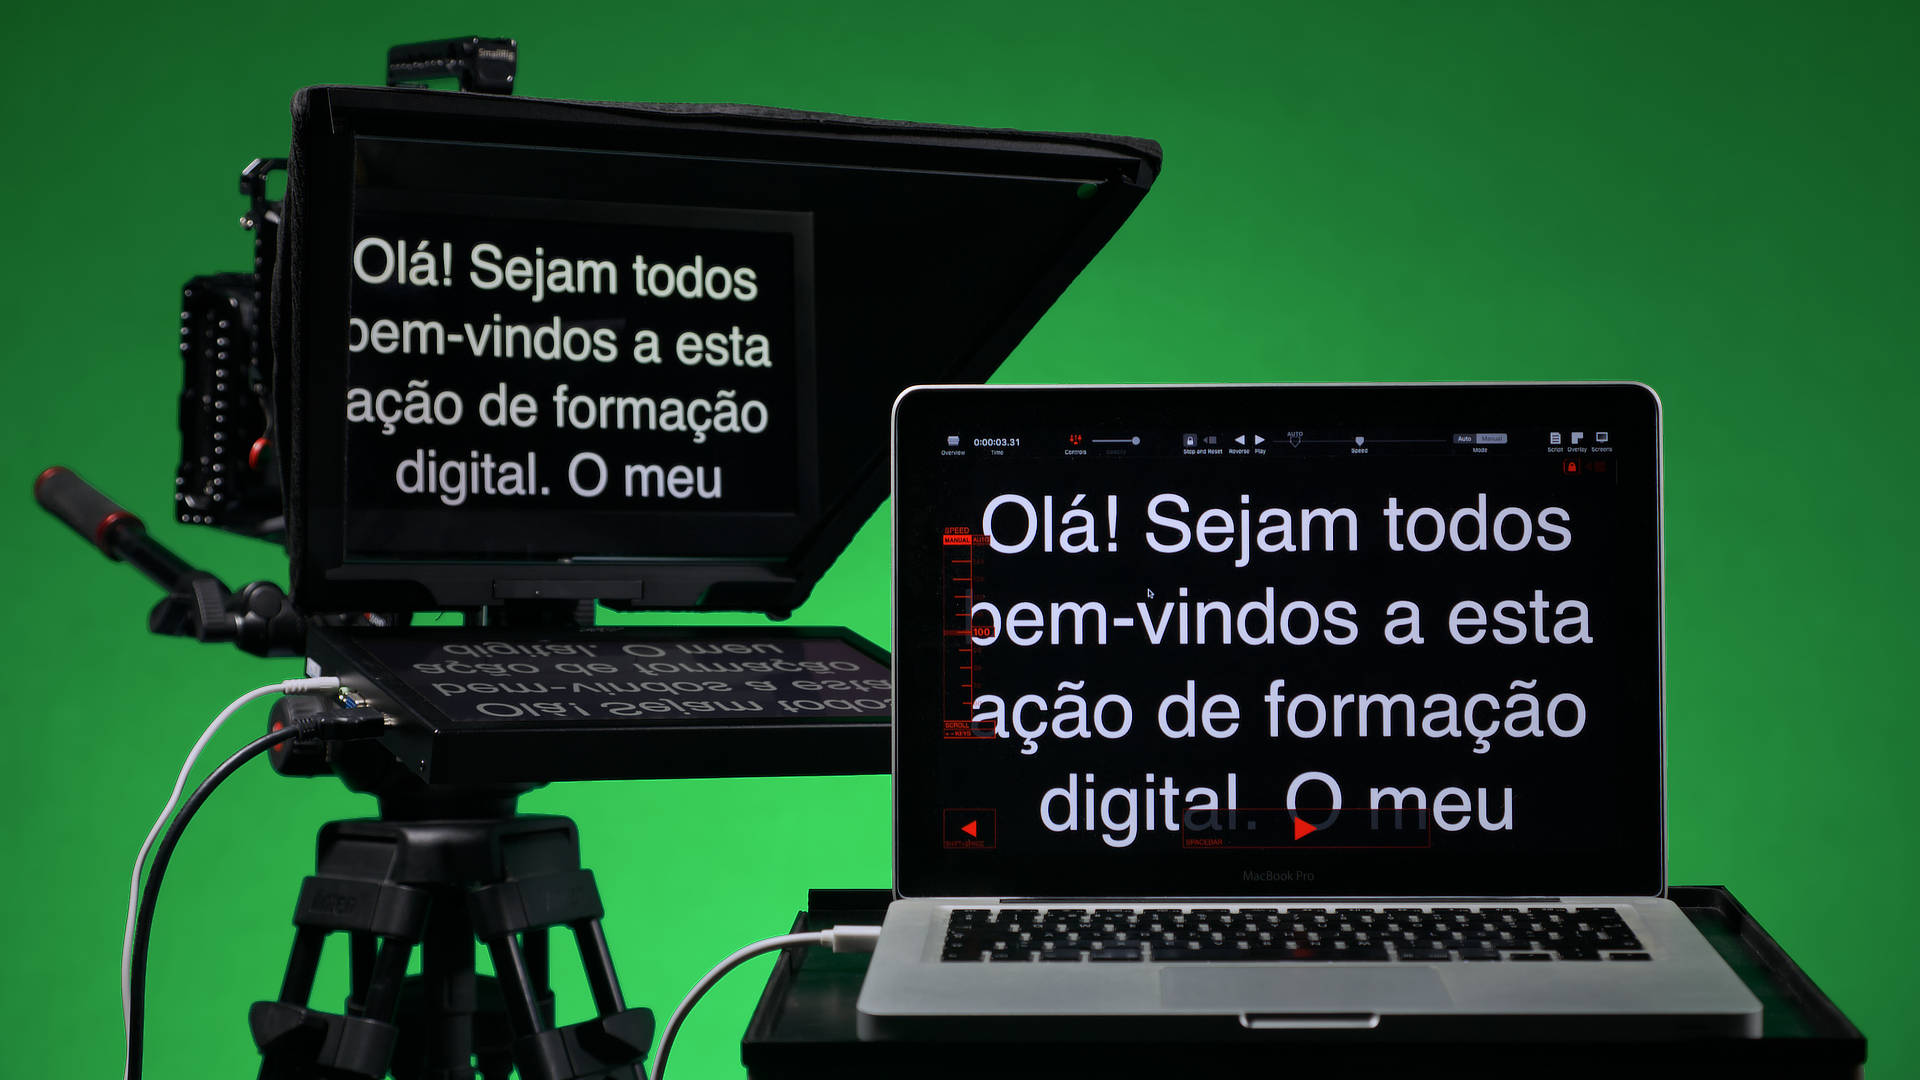 Estúdio de vídeo e fotografia da Multimédia com Todos (Lisboa, 2021)